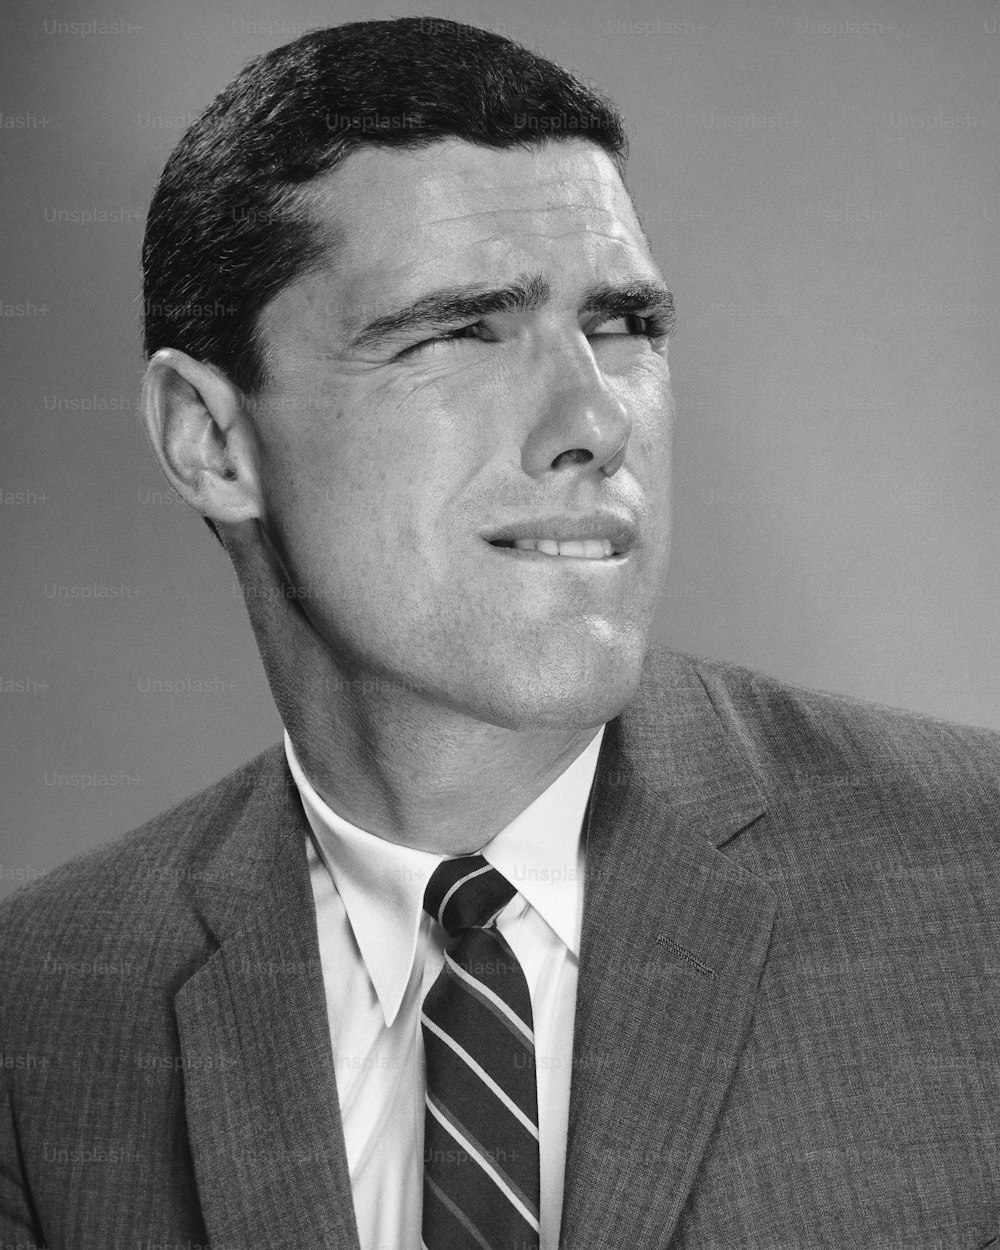 スーツを着た男性の白黒写真